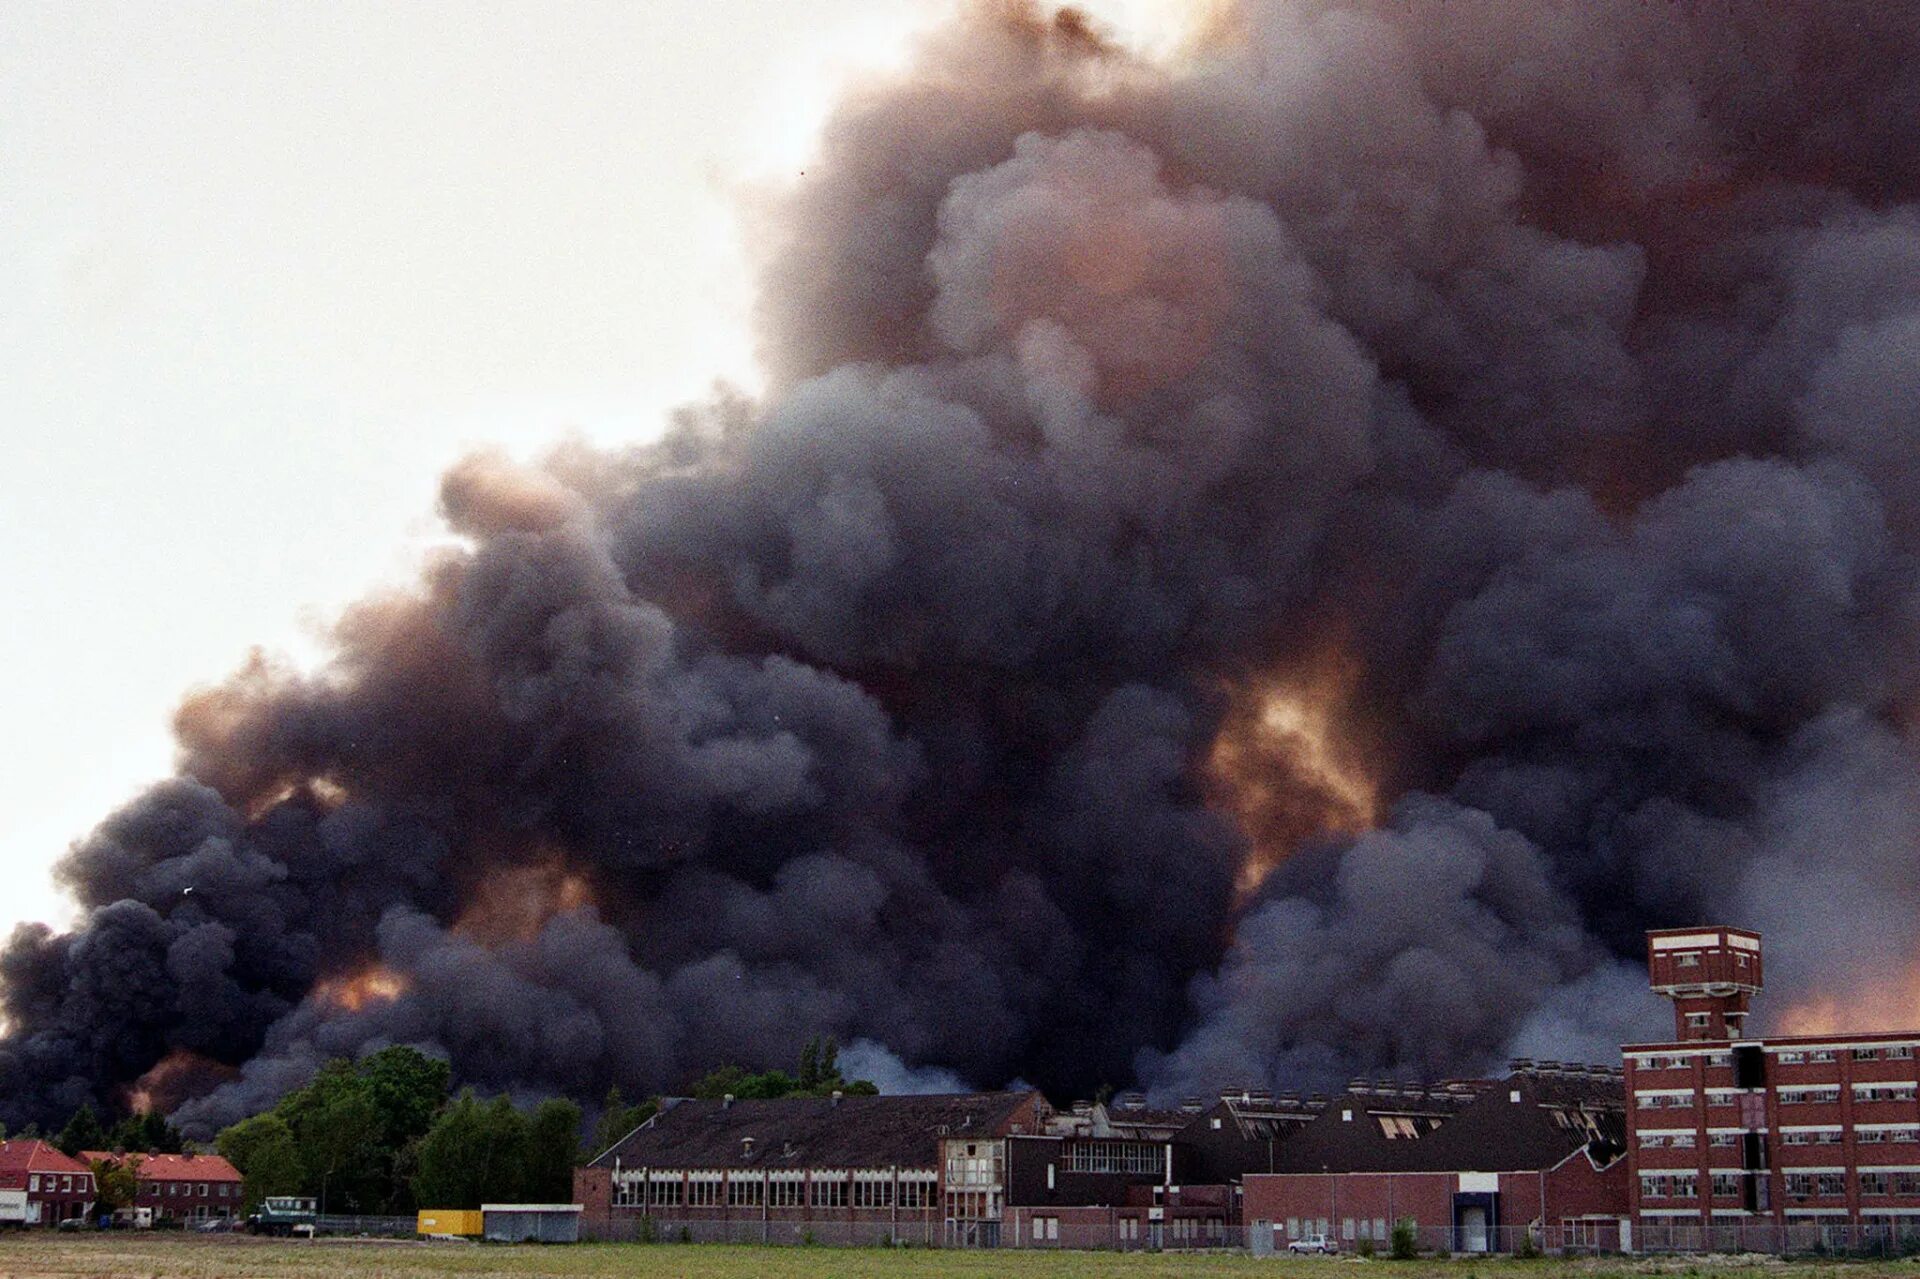 2000 год трагедии. Пожар на пиротехнической фабрике в Энсхеде в 2000. Взрыв на фабрике в Энсхеде. Взрыв на пиротехнической фабрике в Энсхеде. Пожар на пиротехнической фабрике в Энсхеде в 2000 — 23 жертвы.